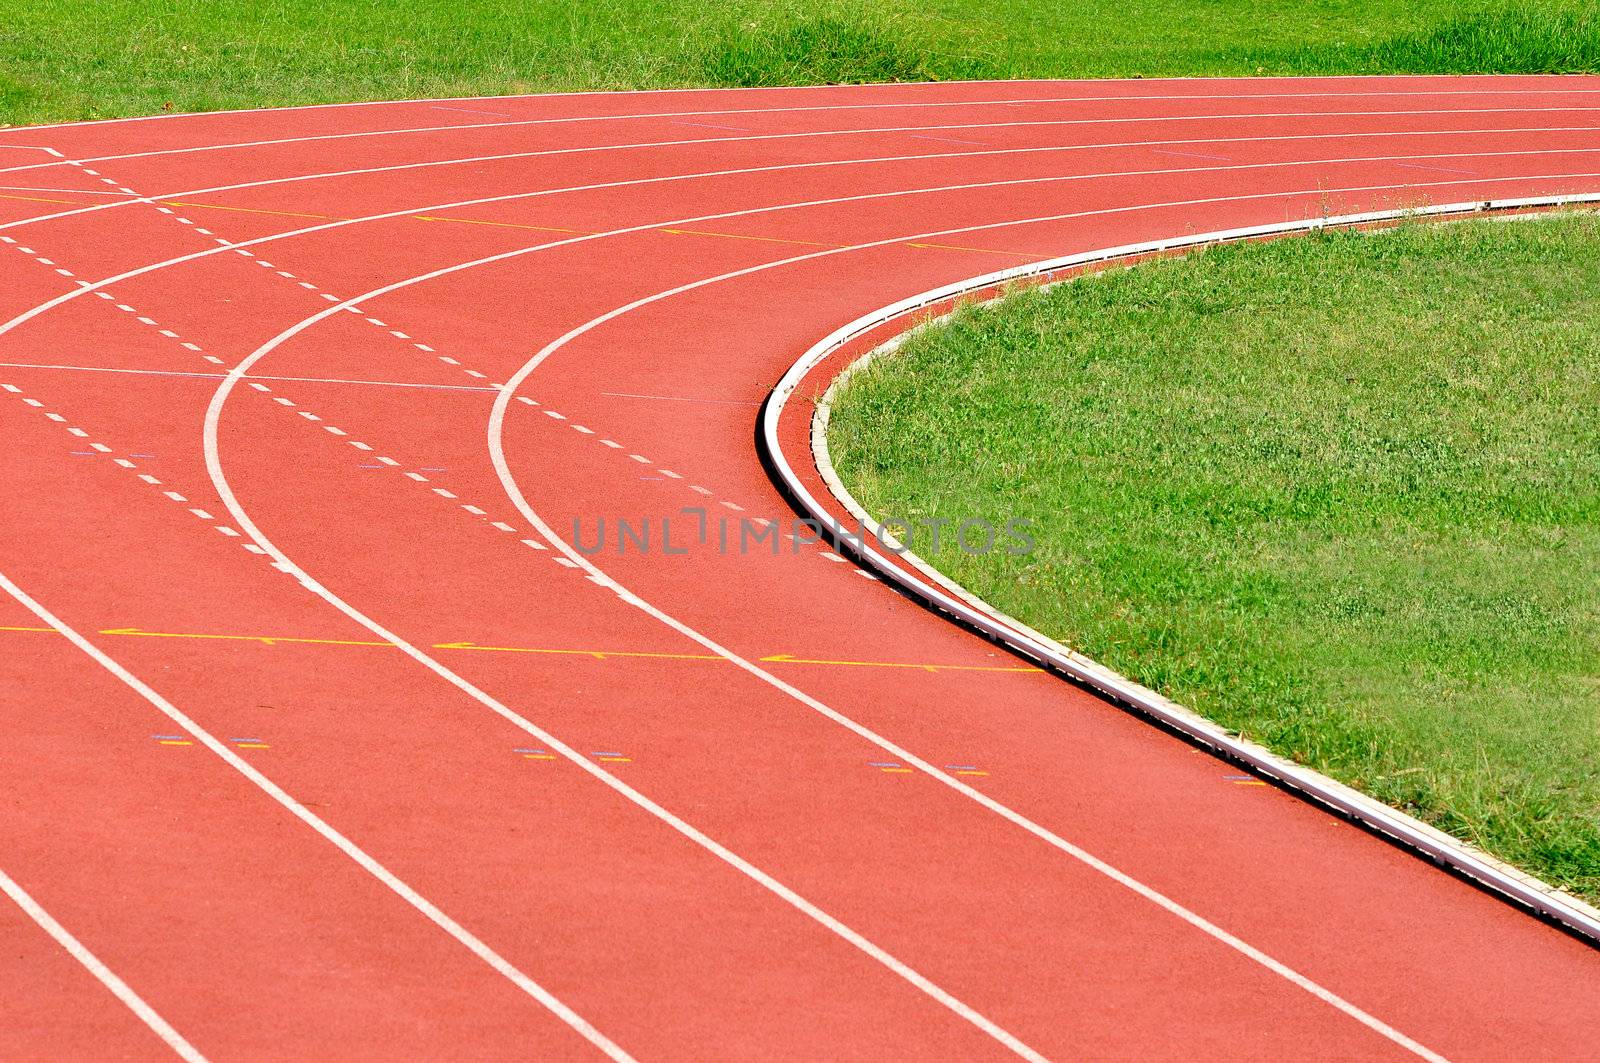 Athletics Running Track by ruigsantos